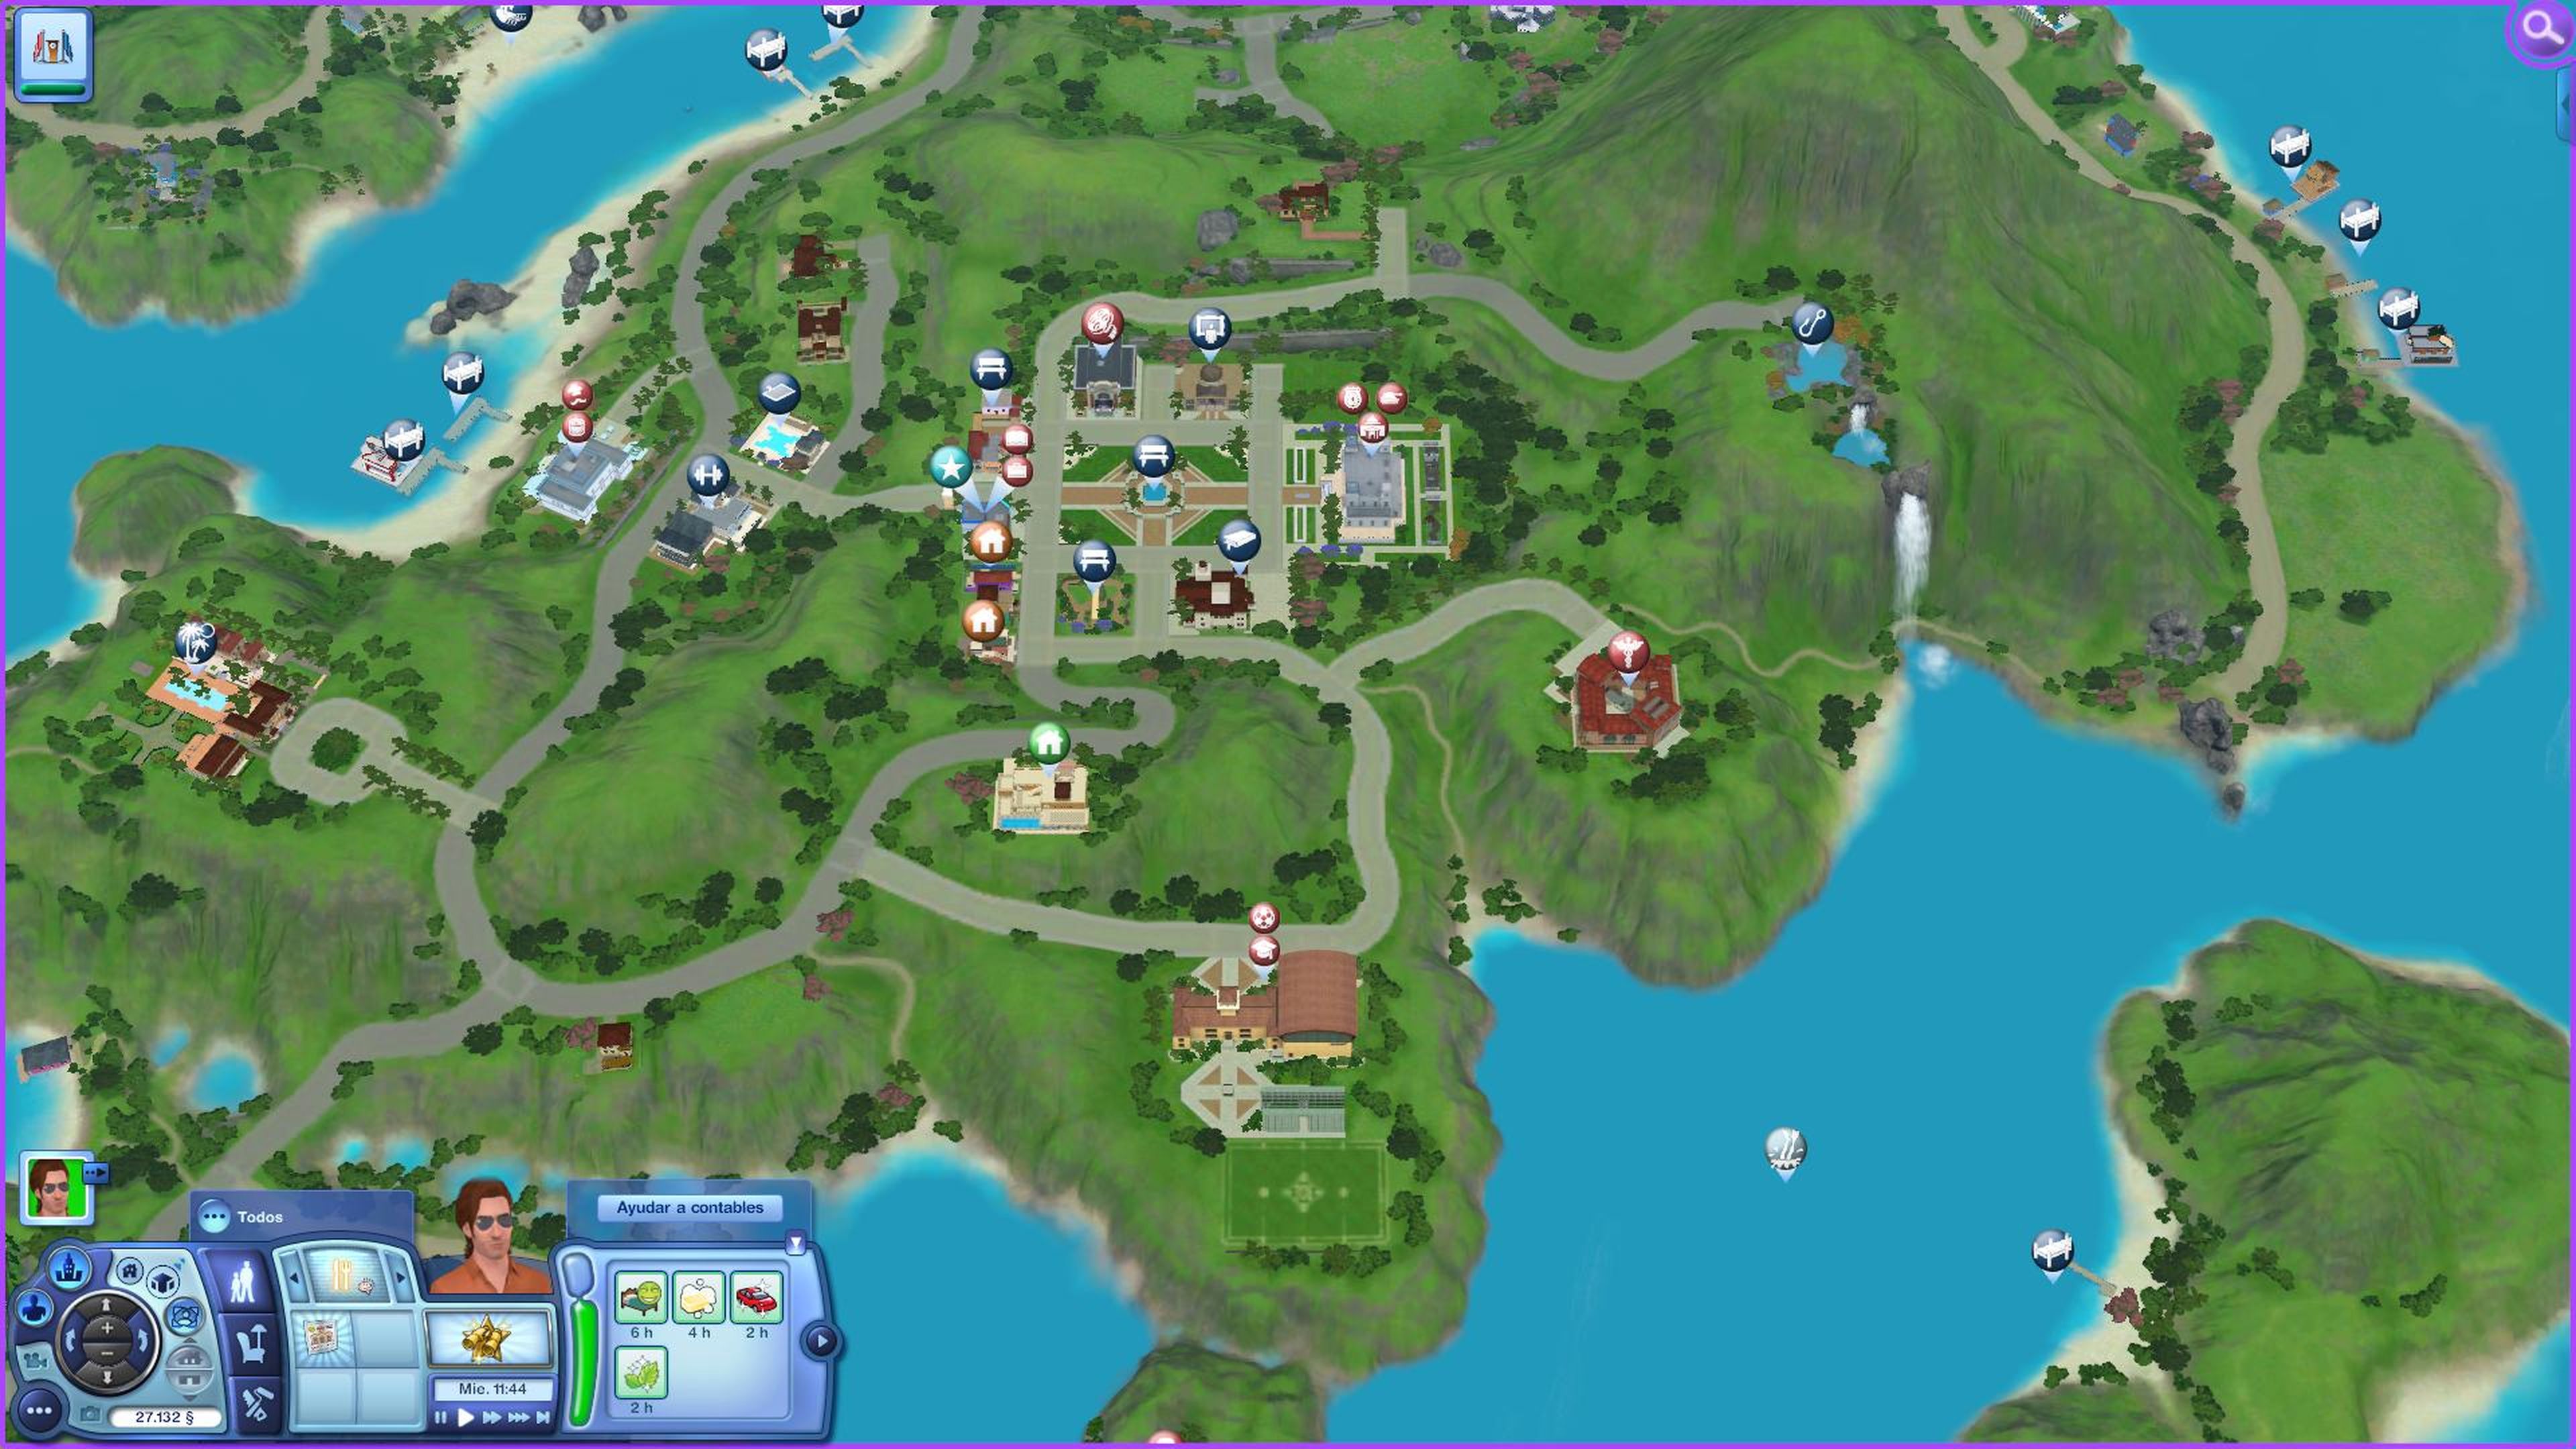 Avance de Los Sims 3 aventura en la Isla